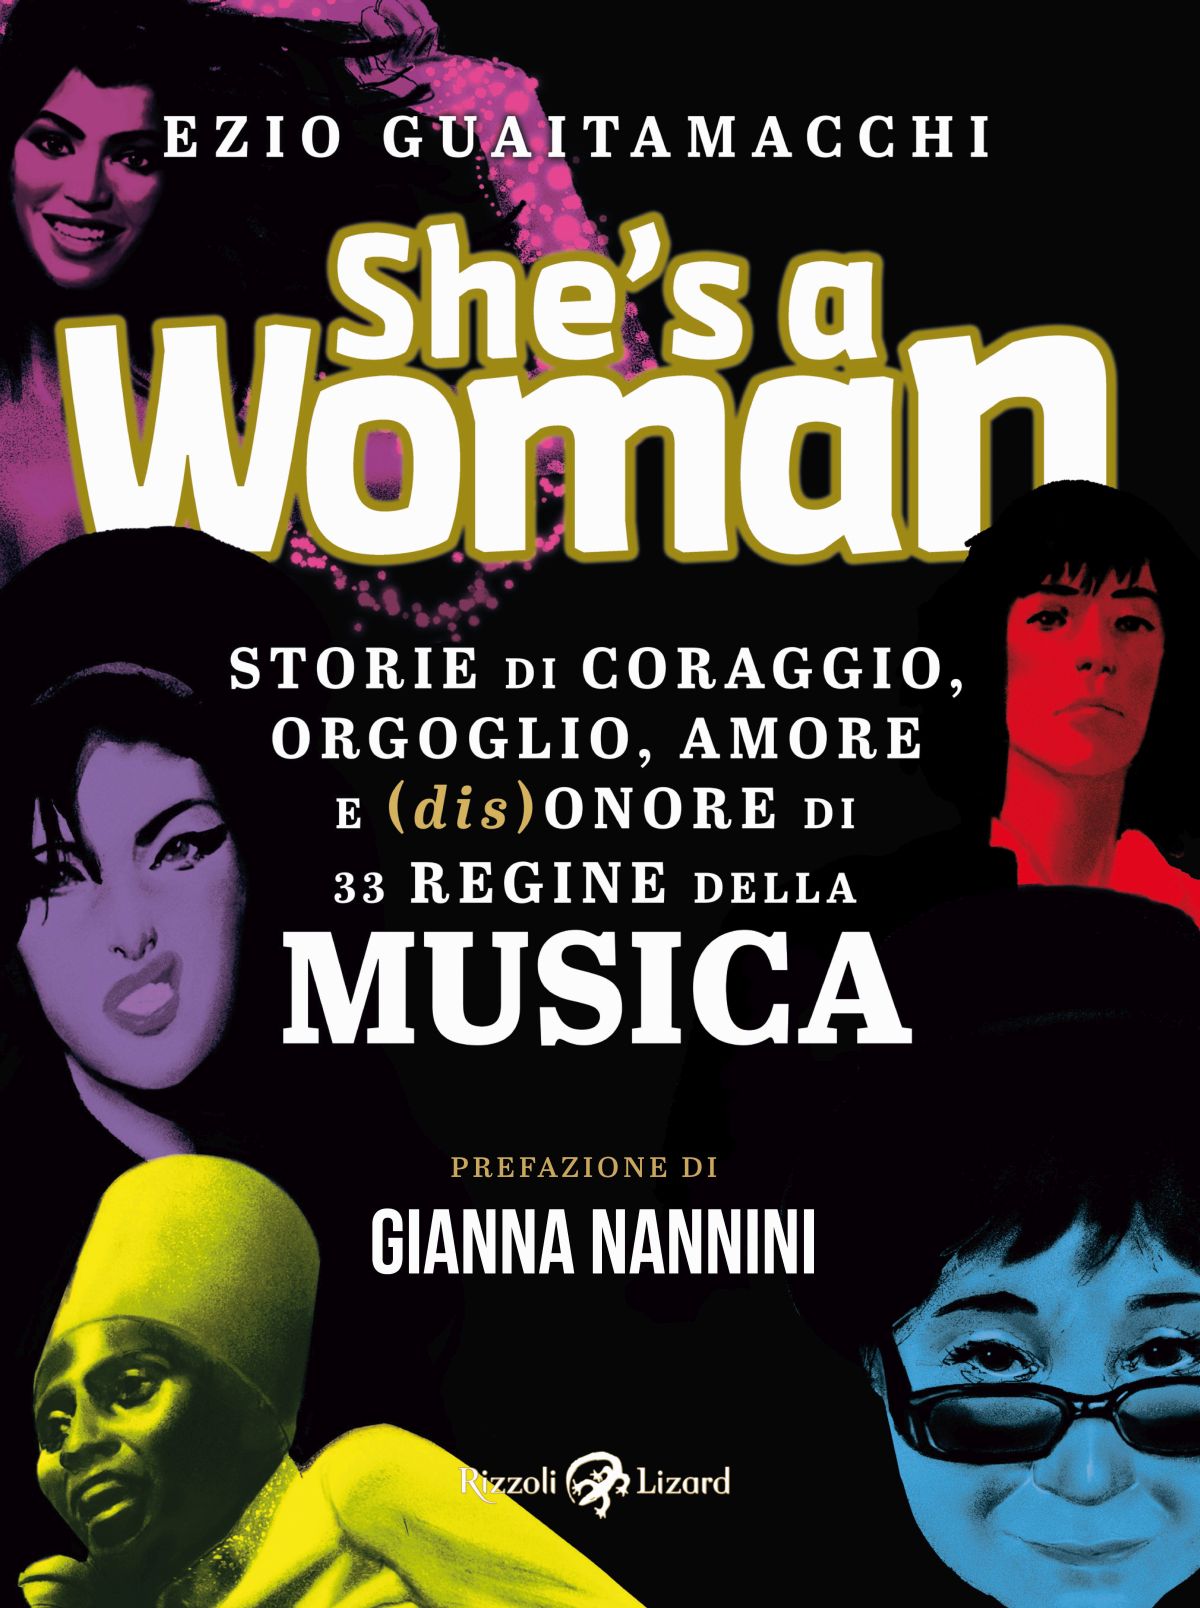 Storie di coraggio, orgoglio, amore e (dis)onore di 33 regine della musica”, il nuovo libro di Ezio GuaitamacciHI